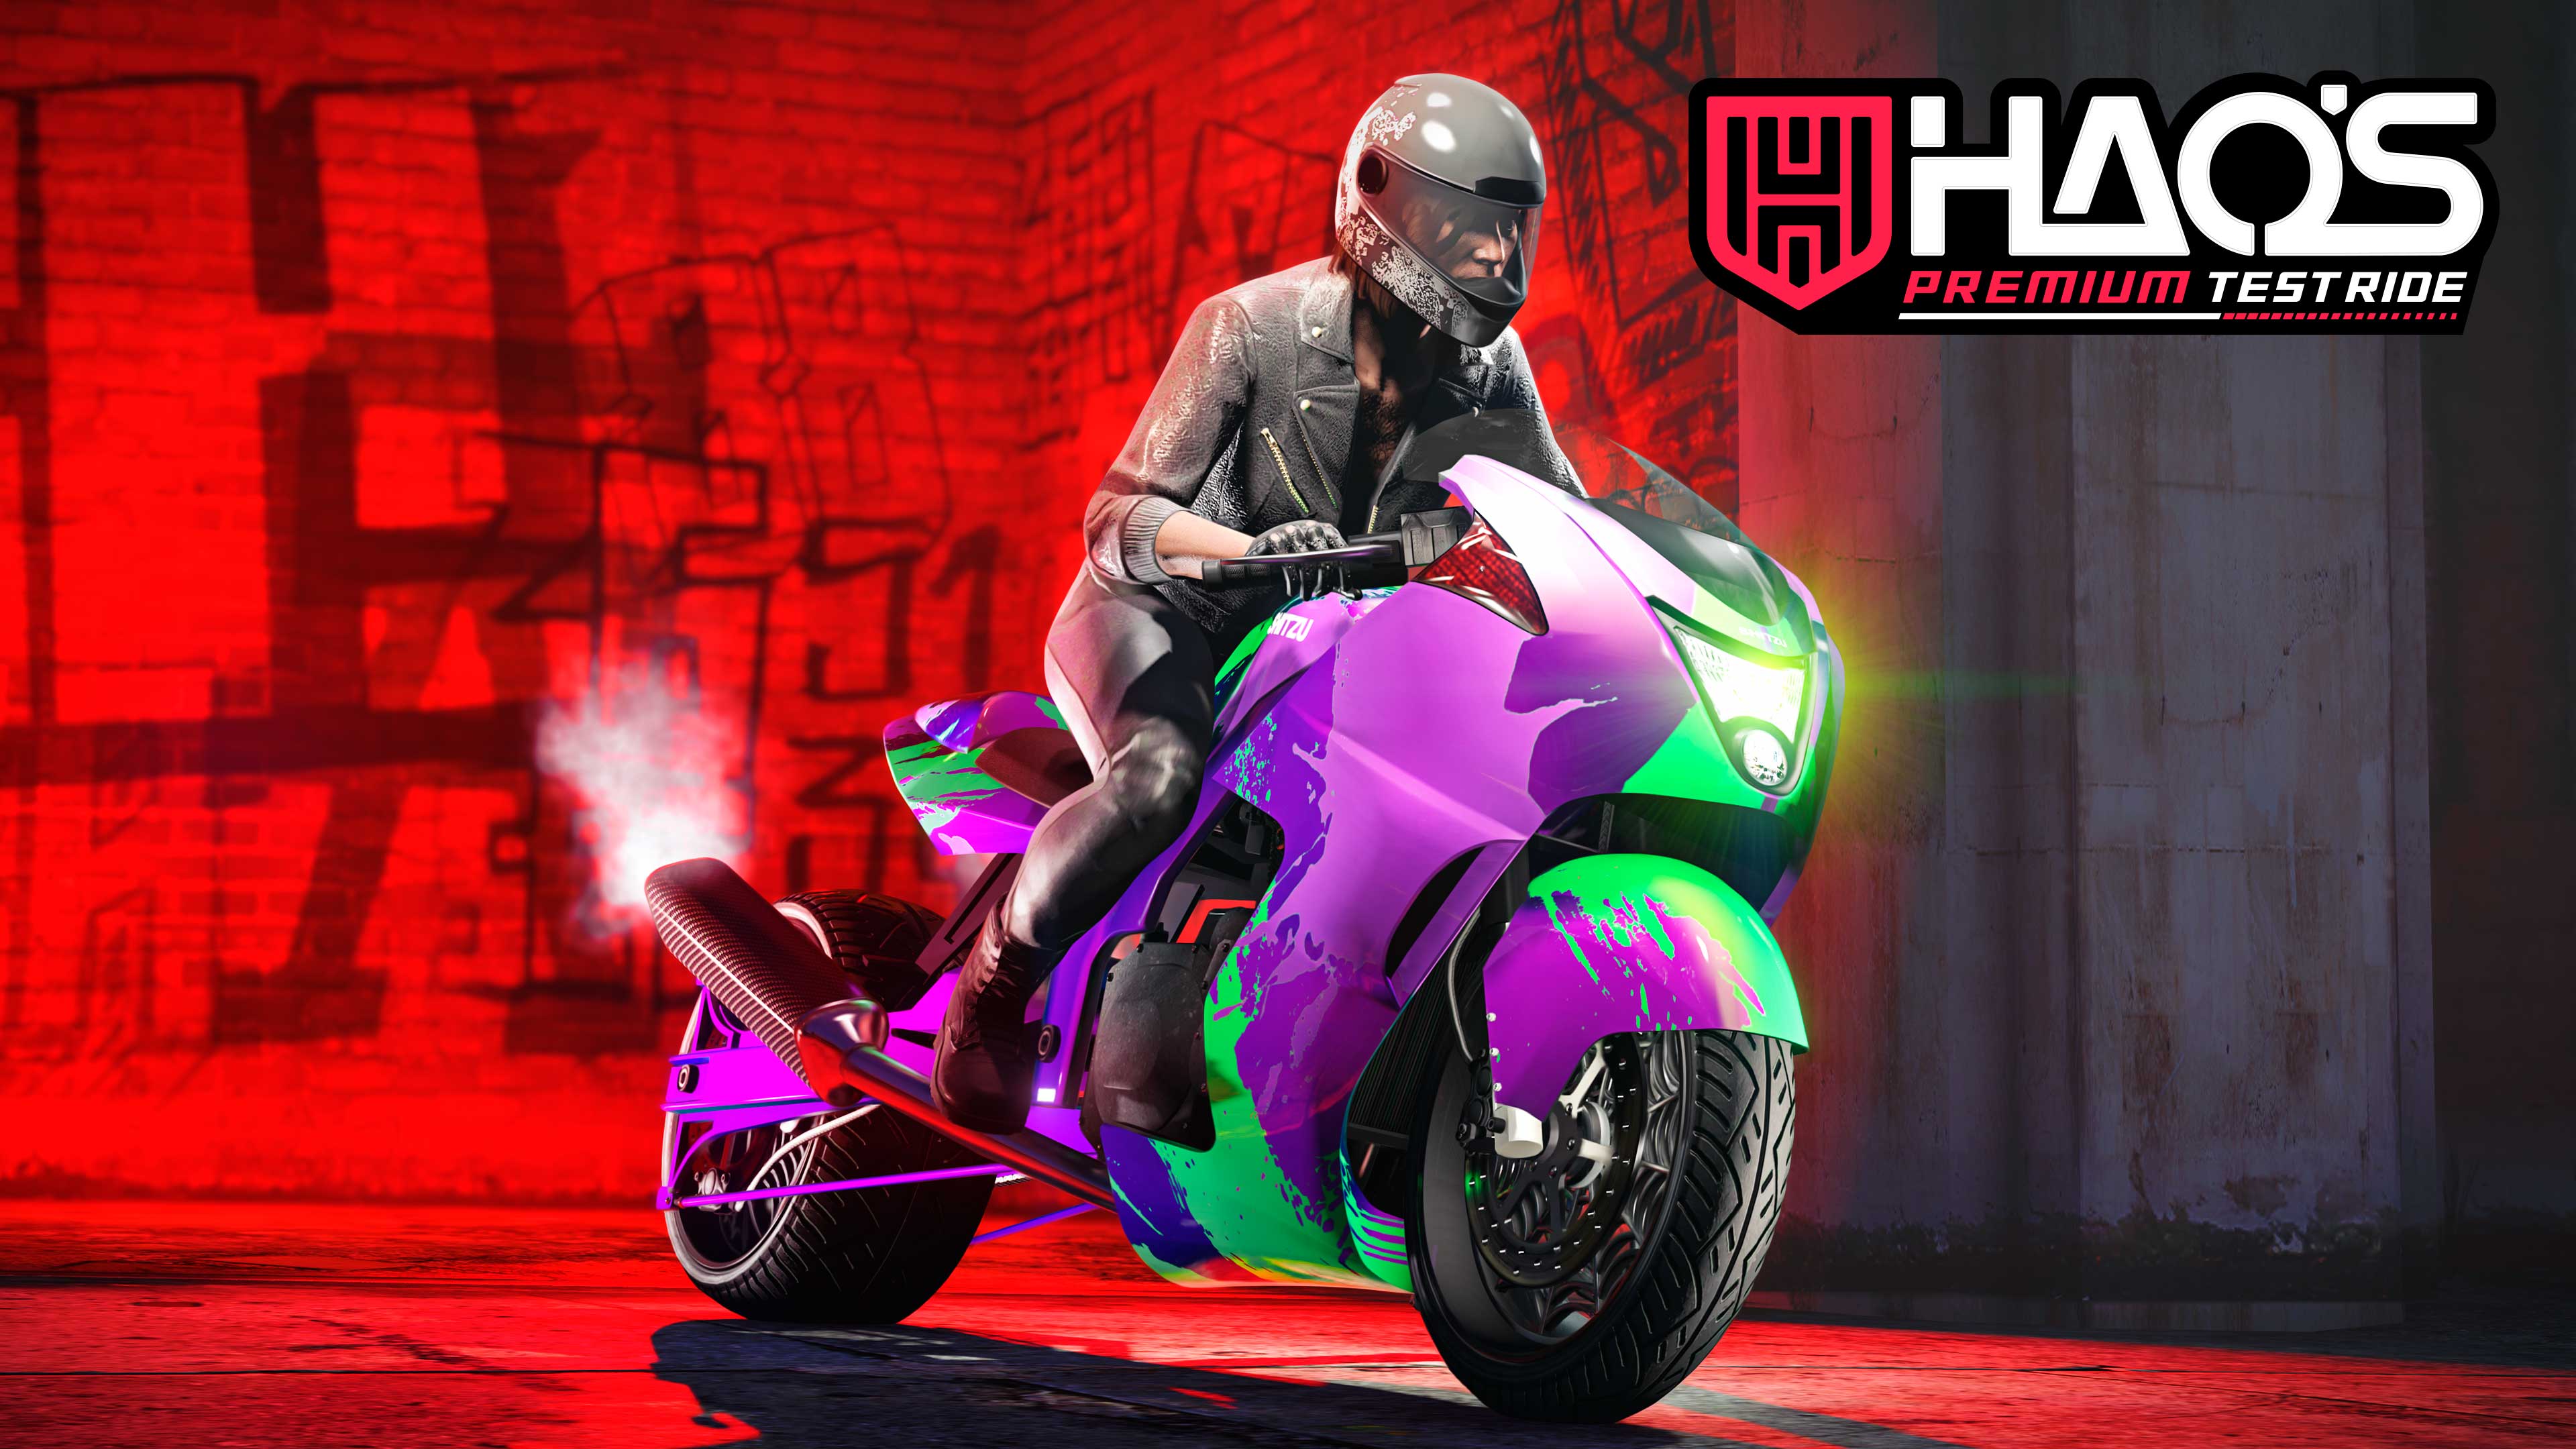 Immagine di GTA Online con il logo Veicolo di prova premium di Hao